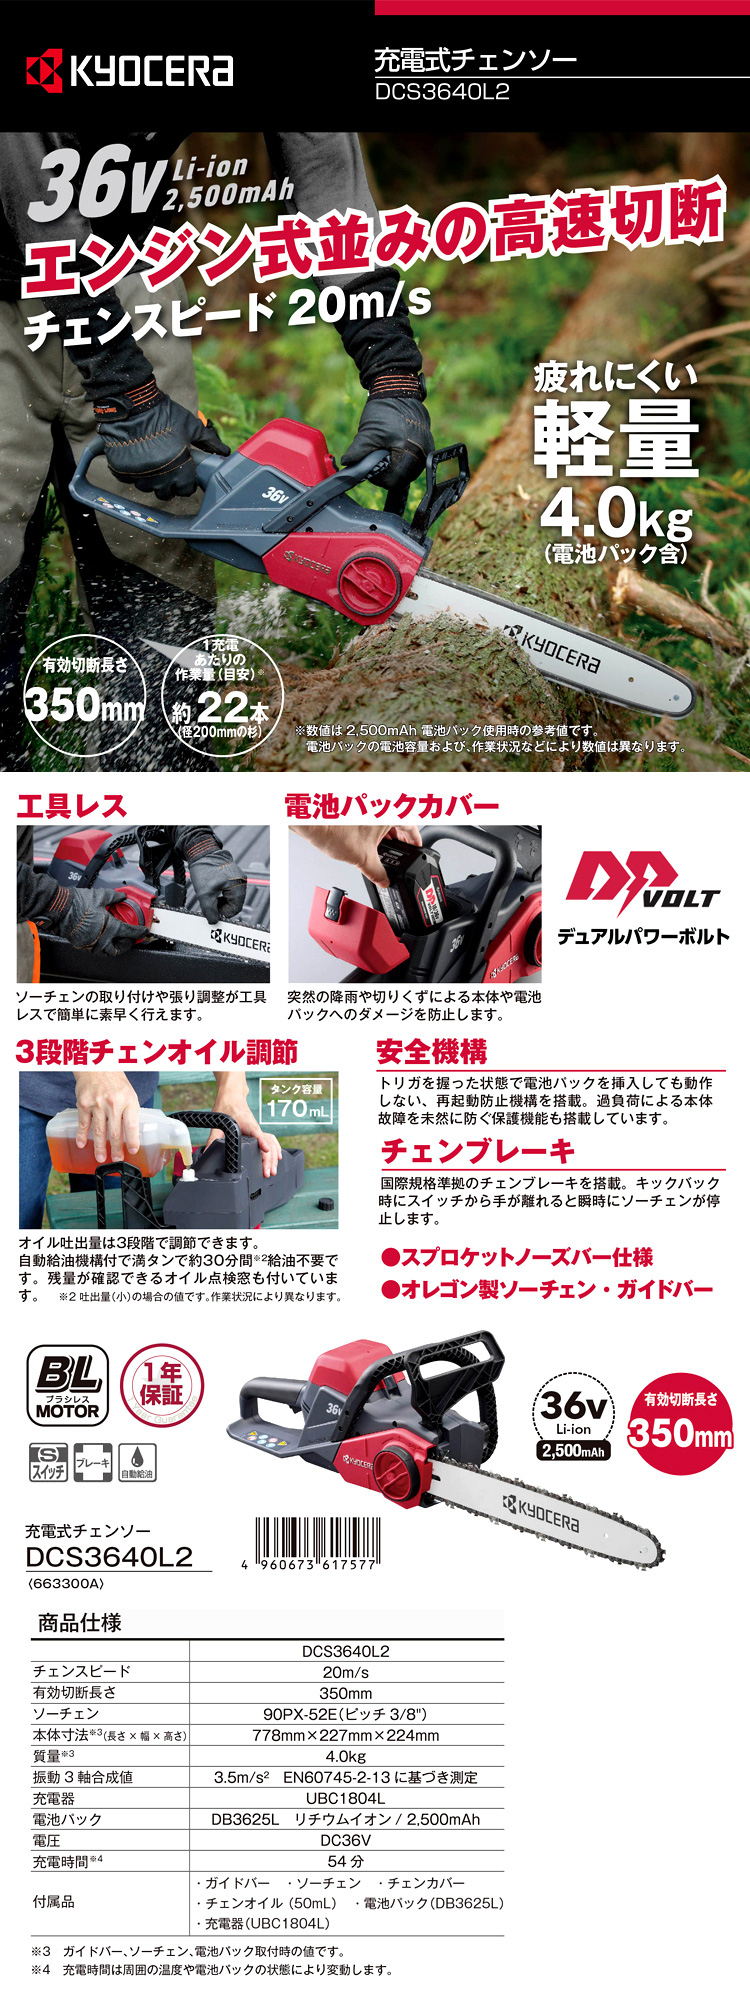 京セラ 36V【2.5Ah電池付】350mm充電式チェンソー DCS3640L2